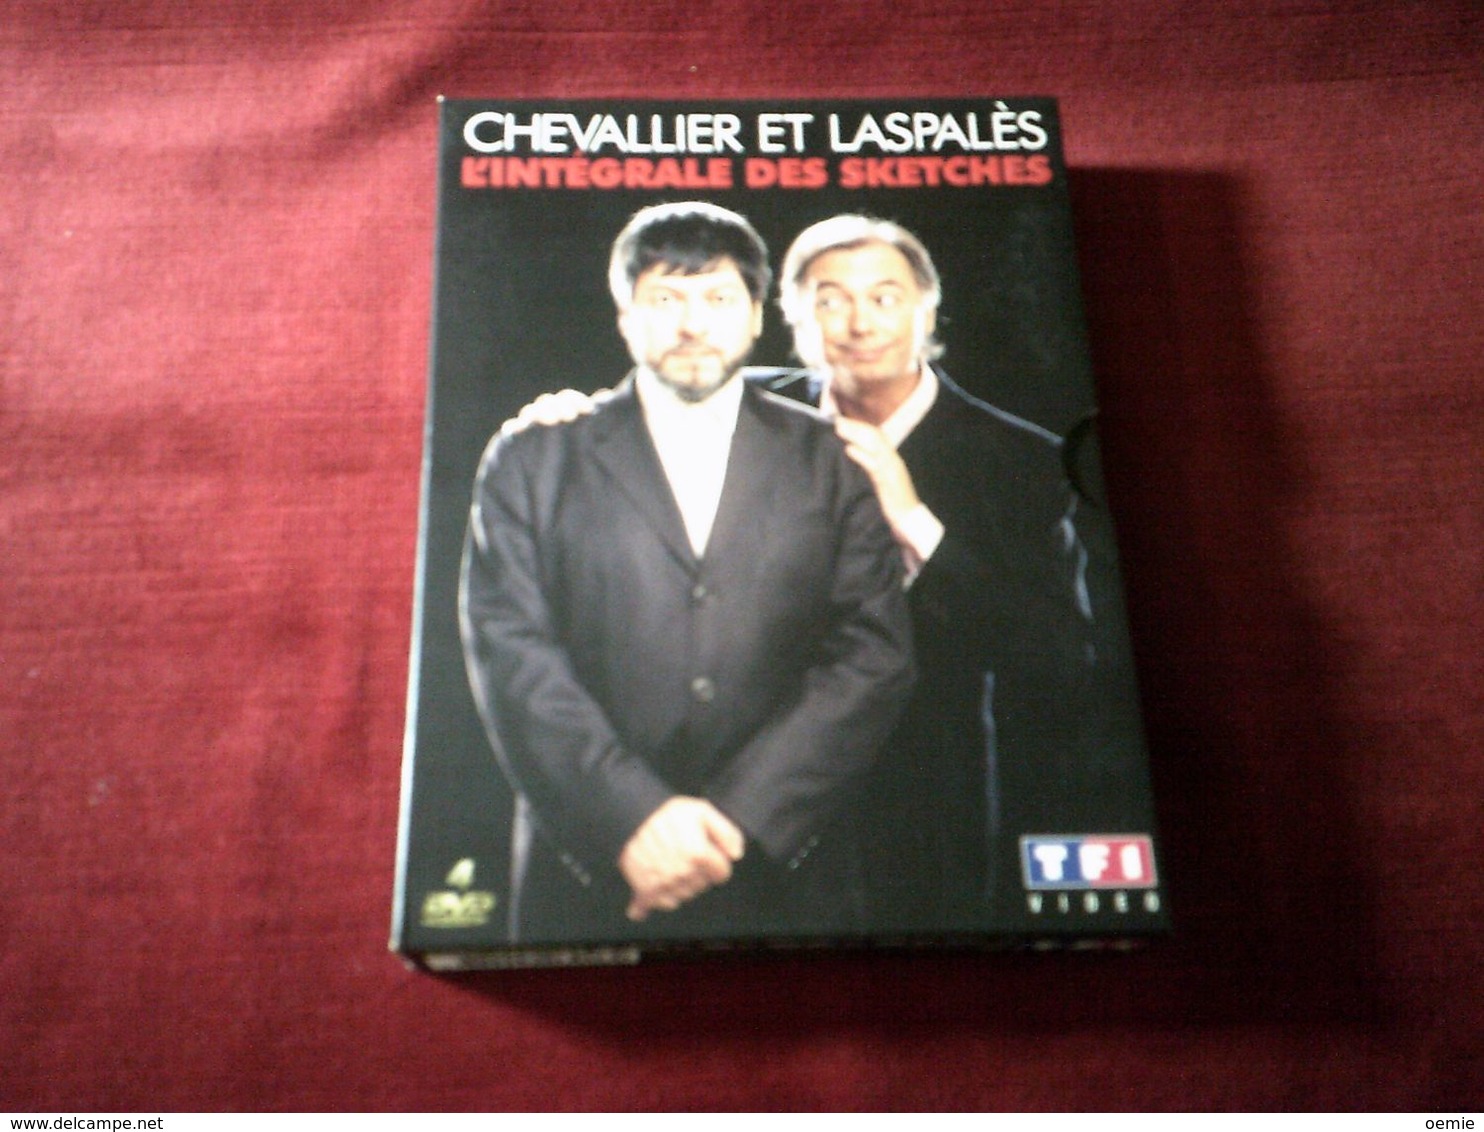 Chevalier Et Laspales  4  DVD  L'INTEGRALE DES SKETCHES - Concert Et Musique